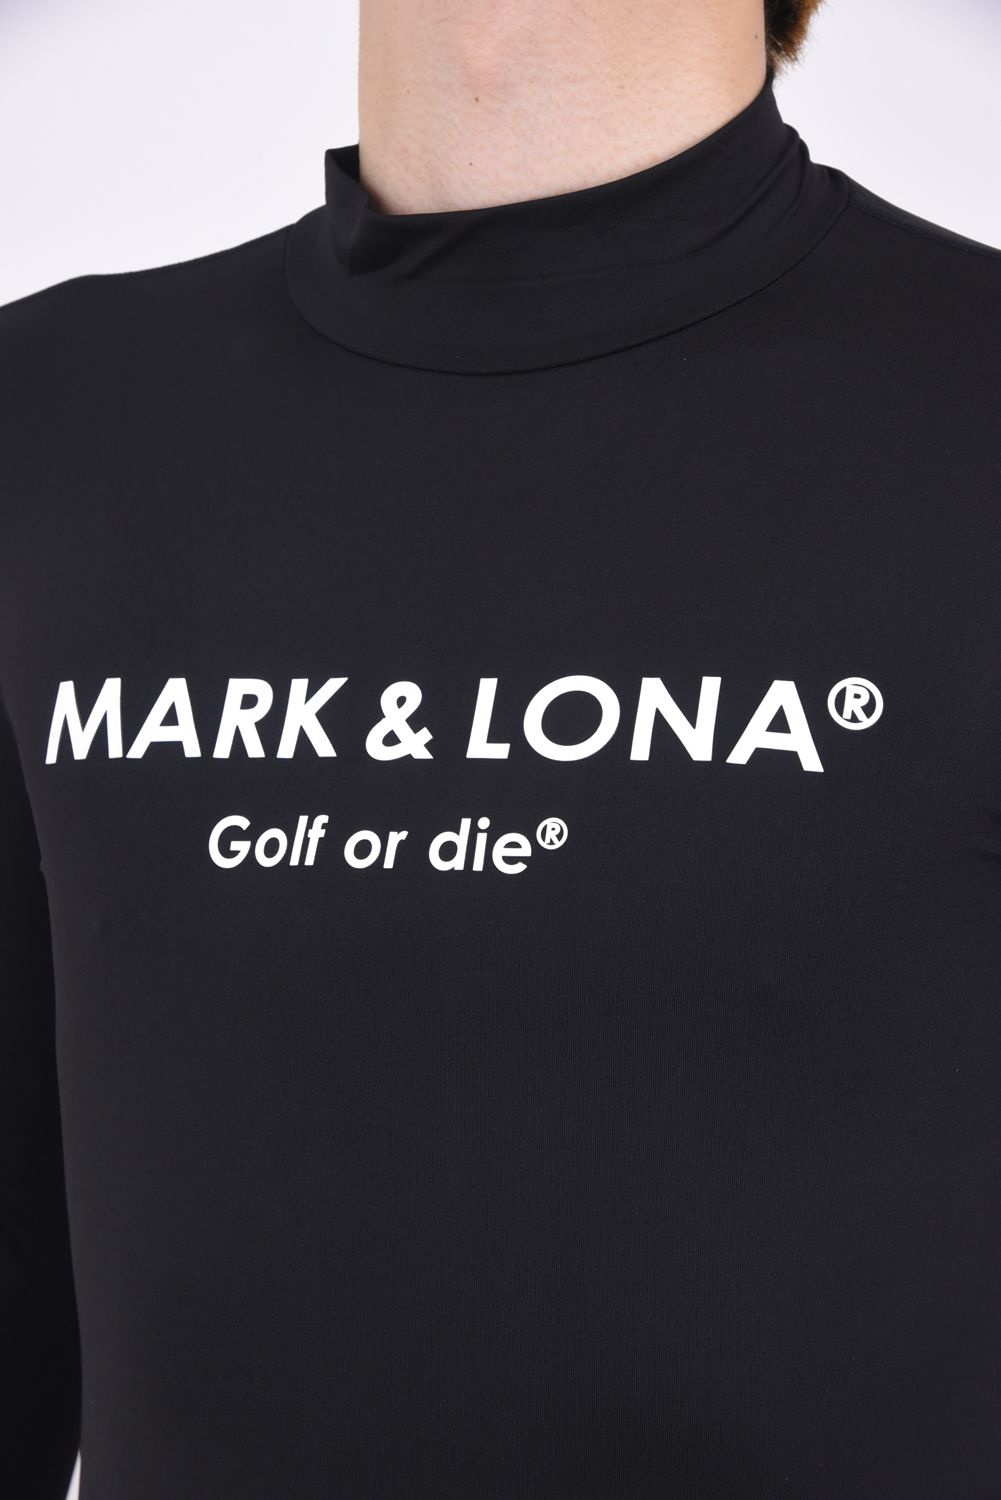 通販在庫新作MARK&LONA UVインナー Mサイズ BLACK 新品 メンズウェア